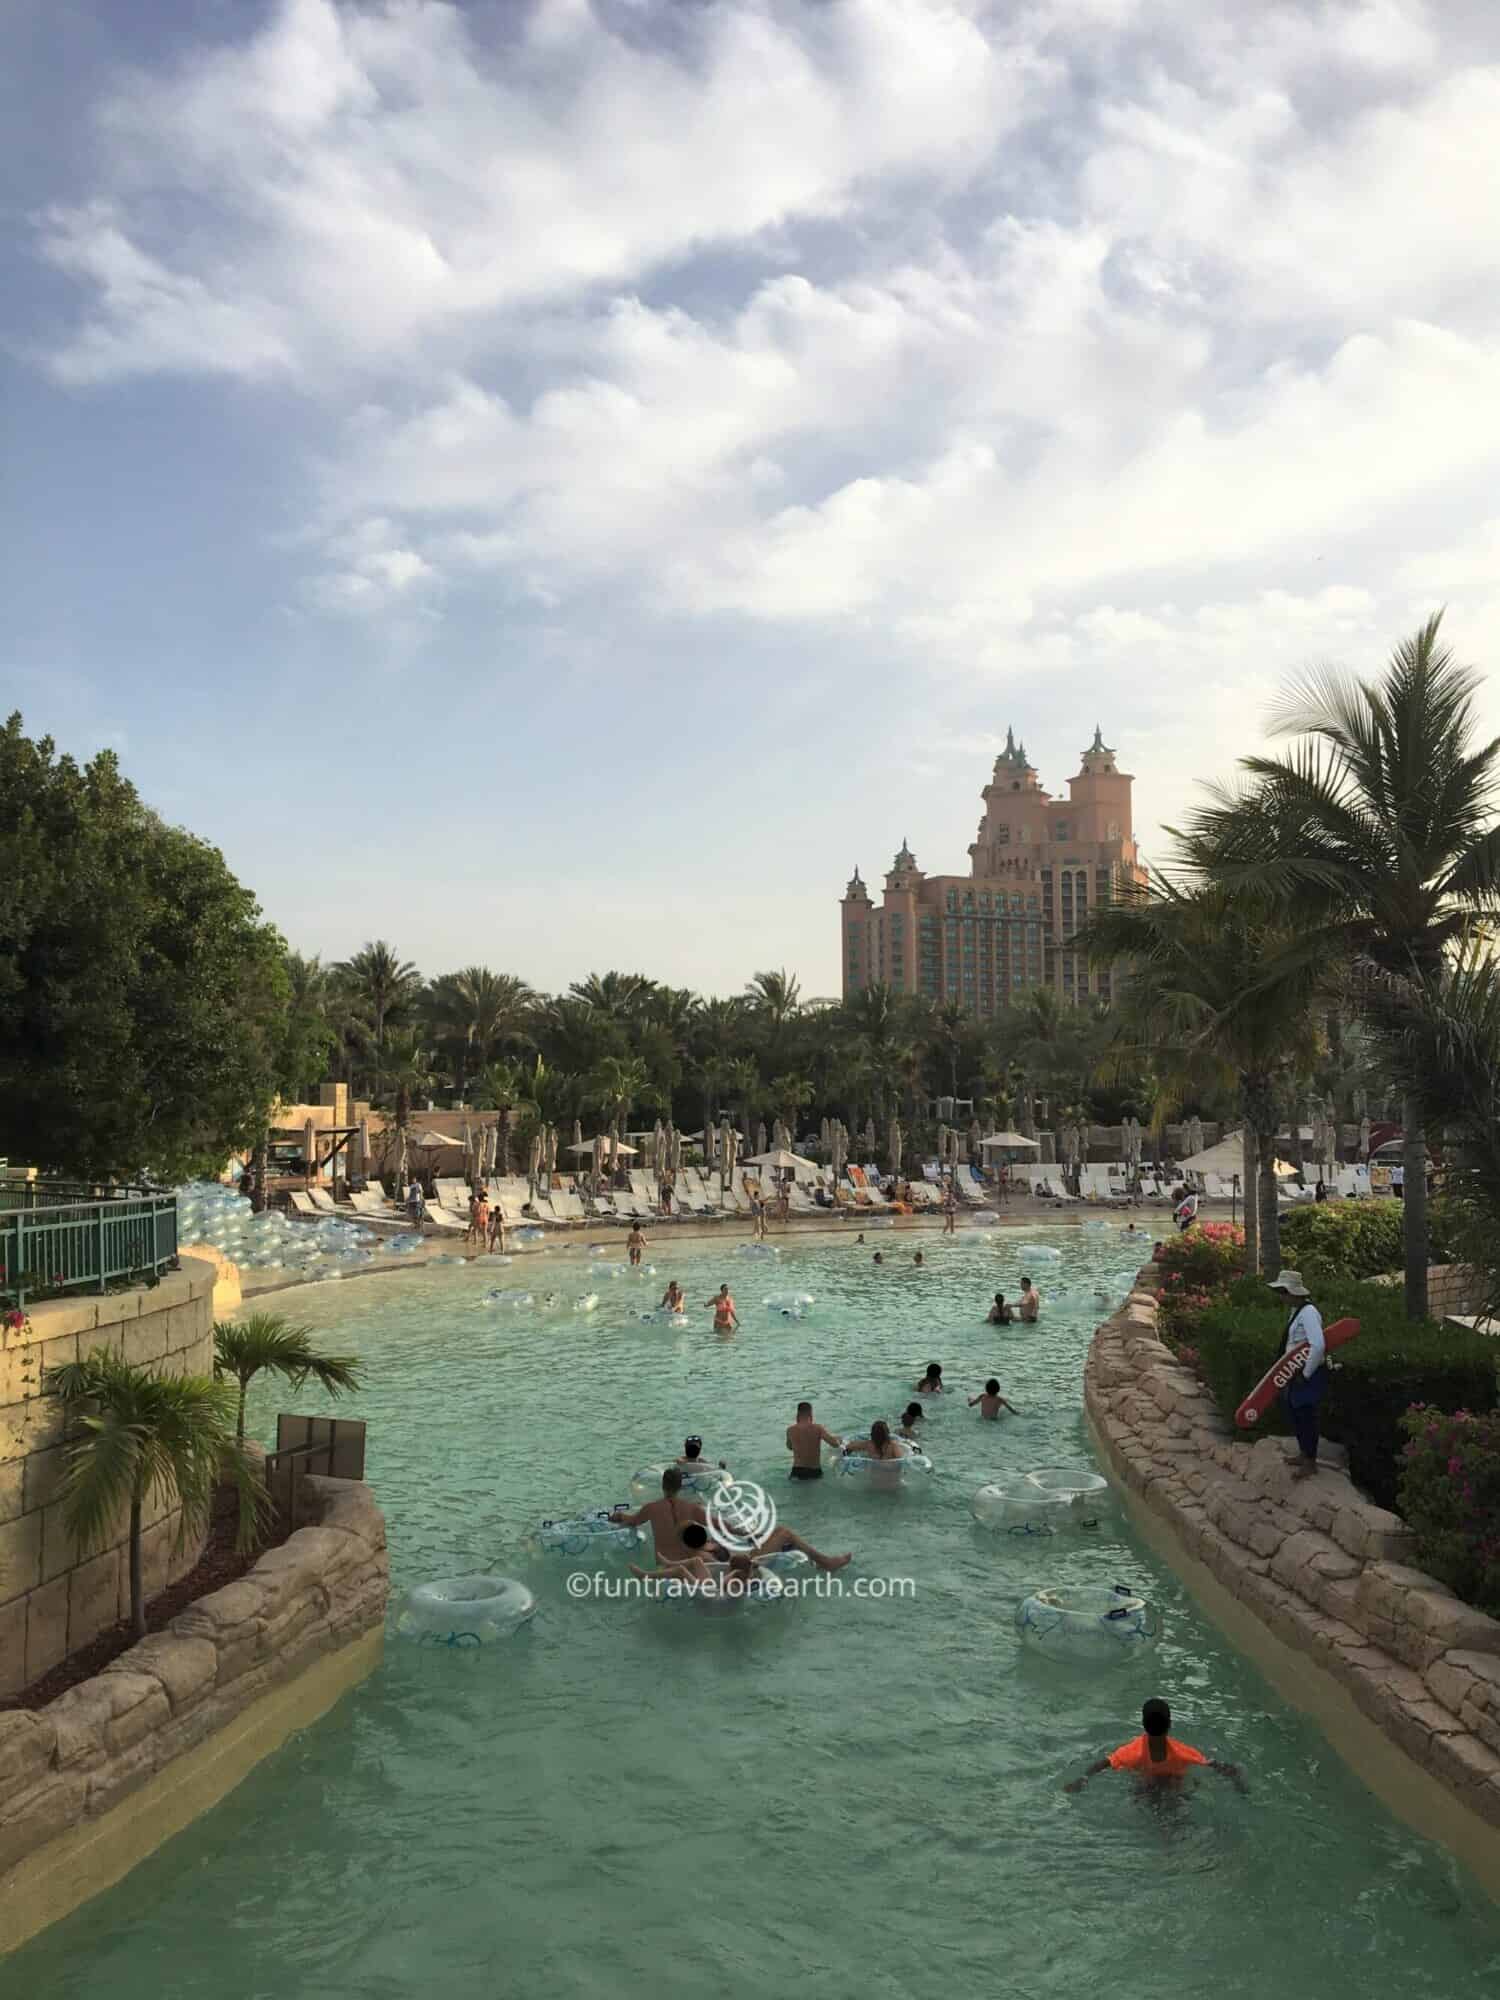 Aquaventure Waterpark,Atlantis The Palm,Dubai,United Arab Emirates